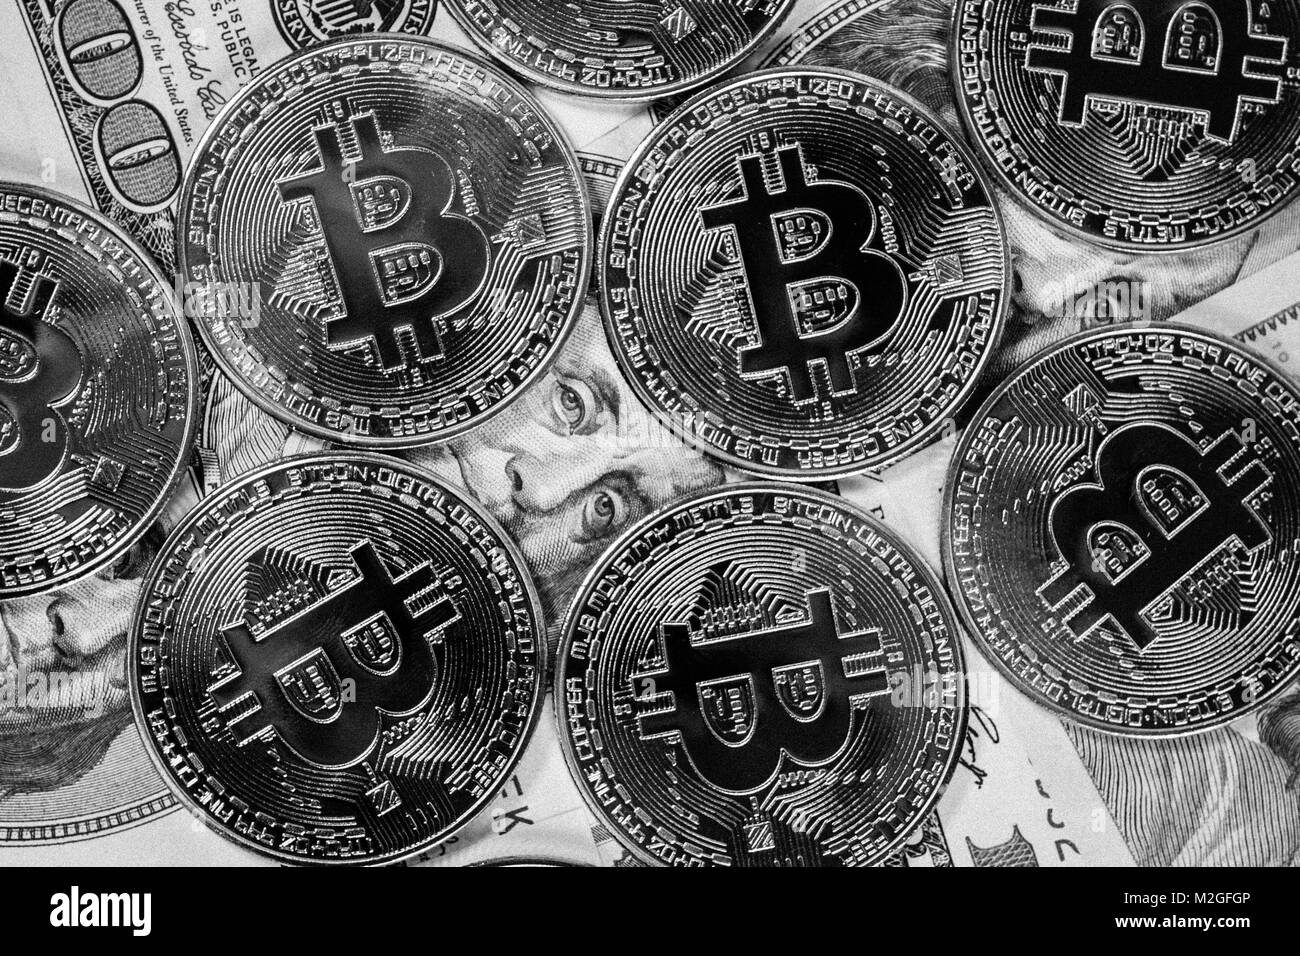 handel mit virtuellen münzen warum sollten investmentunternehmen bitcoin akzeptieren?